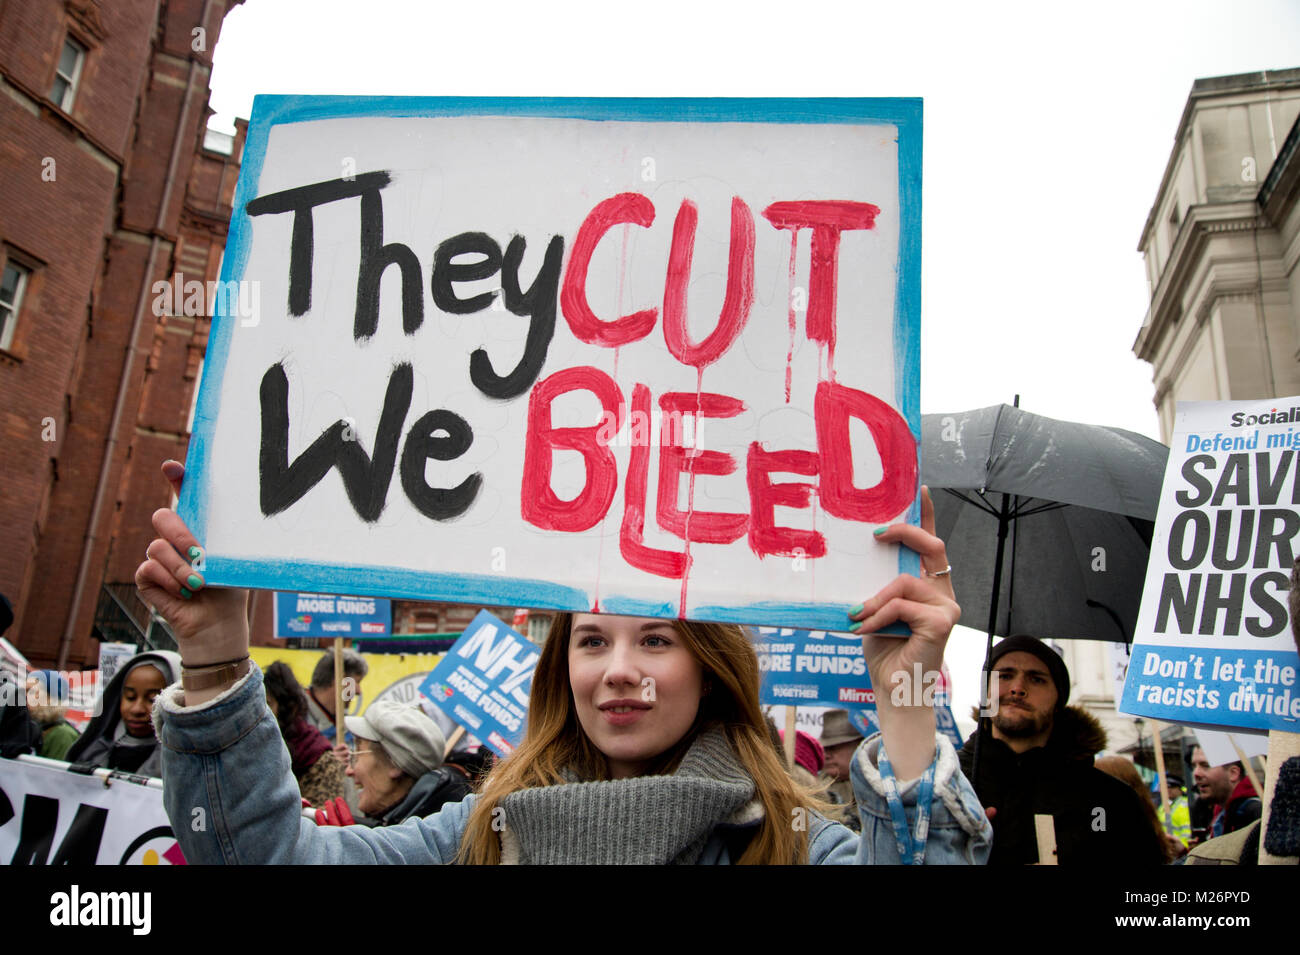 Manifestación convocada por la Asamblea Popular en apoyo del NHS (Servicio Nacional de Salud}. Una joven sostiene una pancarta diciendo 'cortan' nos purga Foto de stock